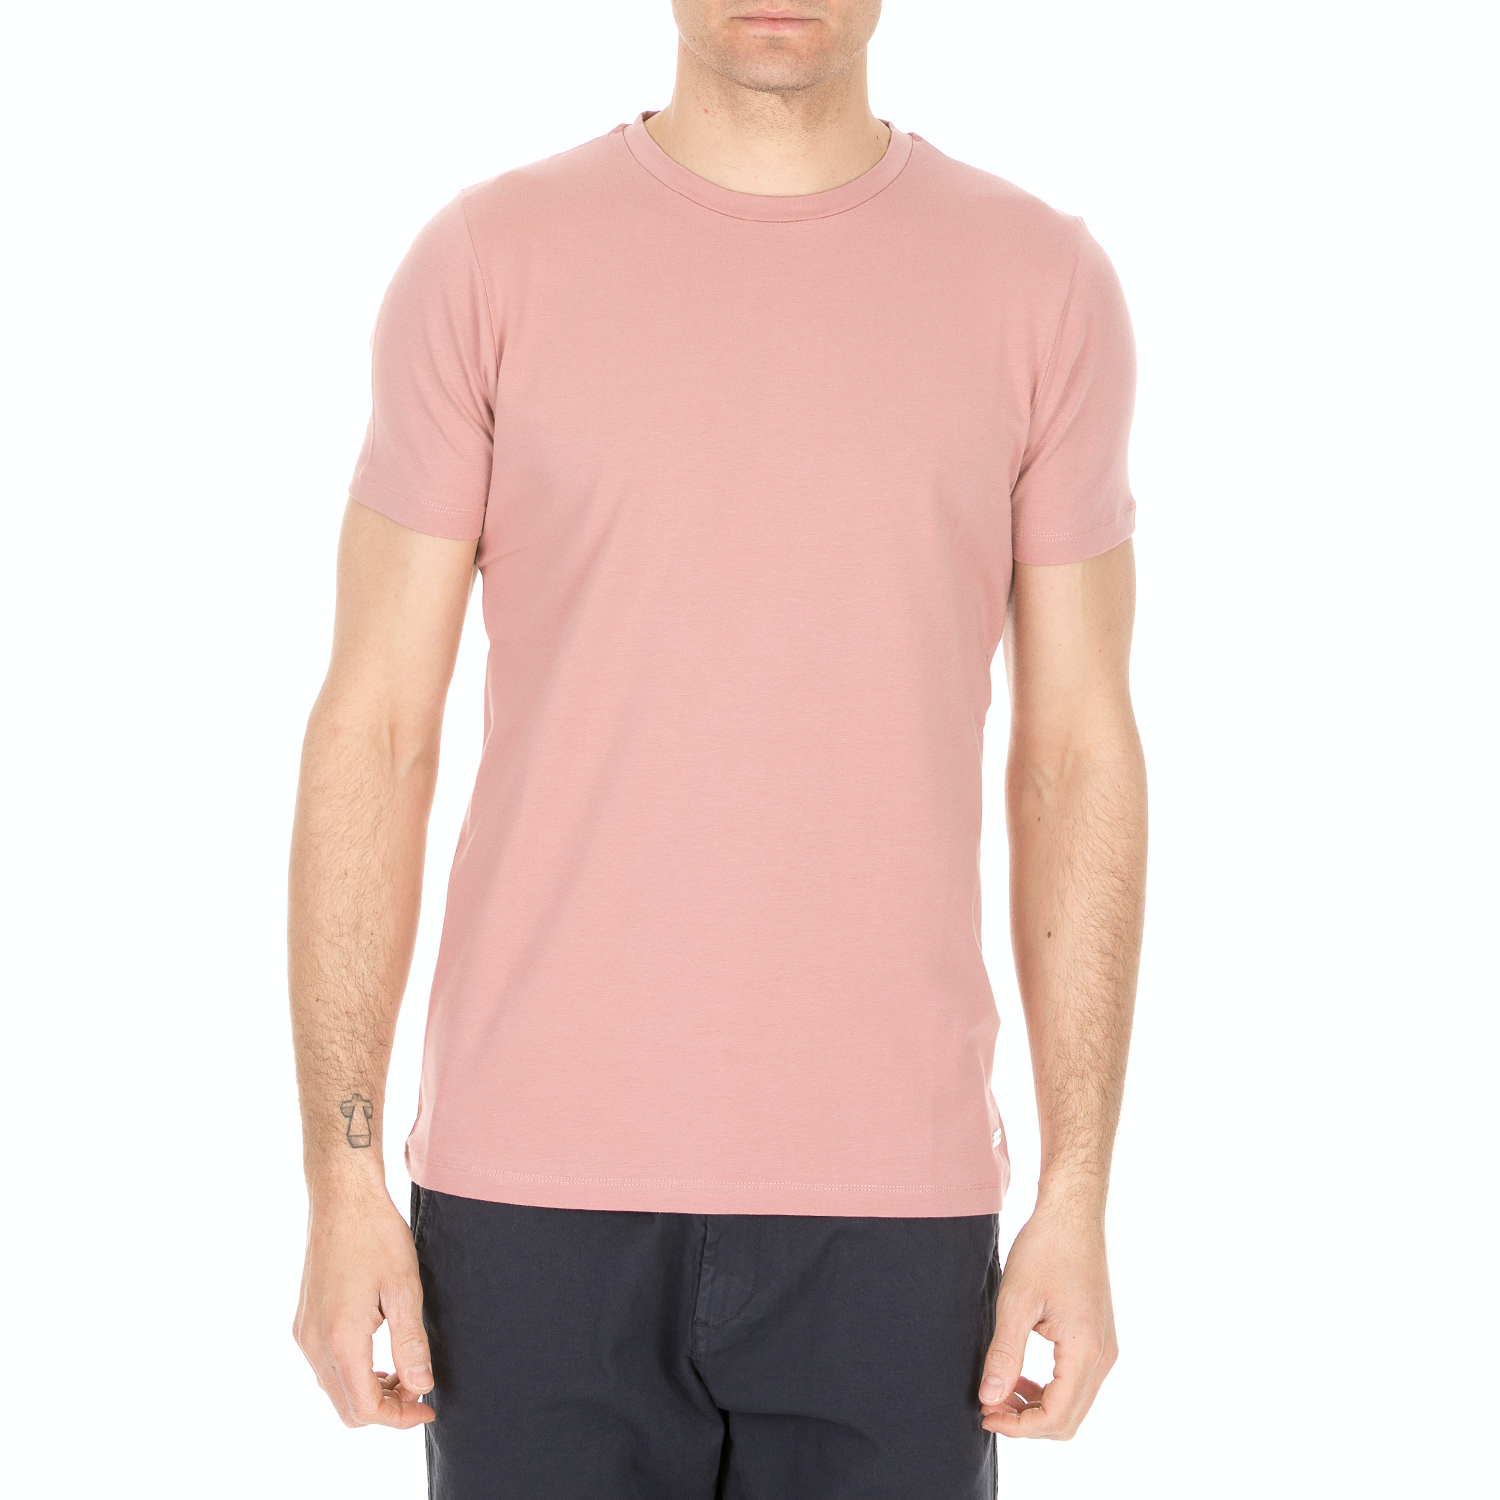 Ανδρικά/Ρούχα/Μπλούζες/Κοντομάνικες SSEINSE - Ανδρική κοντομάνικη μπλούζα SSEINSE ροζ